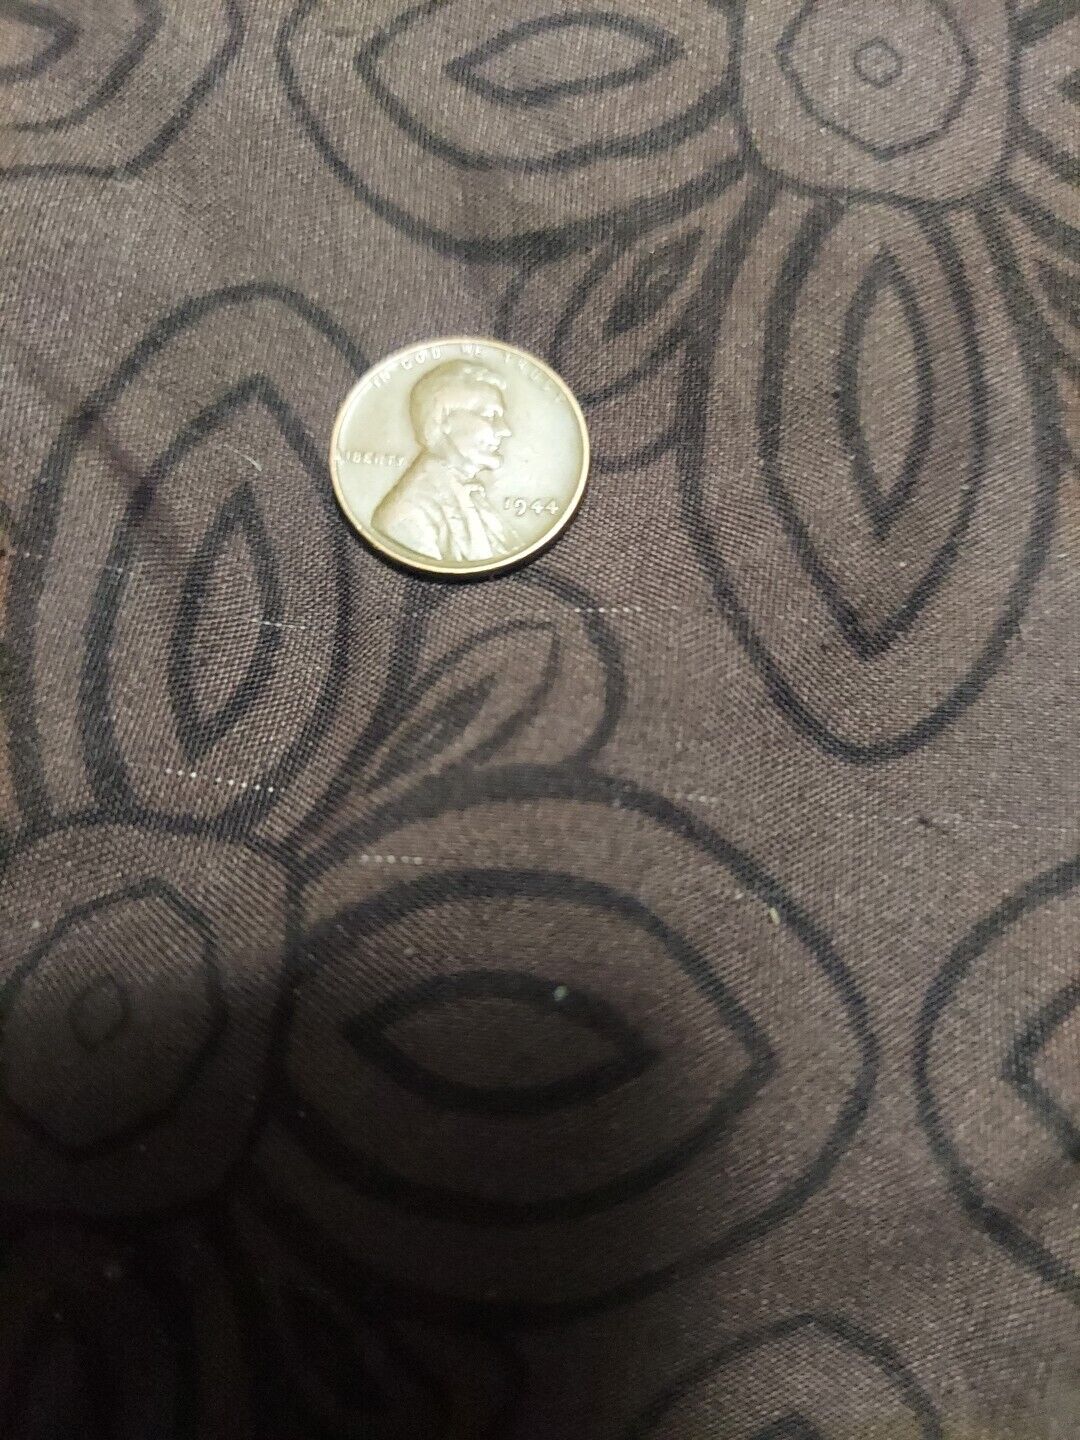 RARE 1944 Lincoln Wheat Penny No Mint Mark Coin Rim Error L In Liberty #105